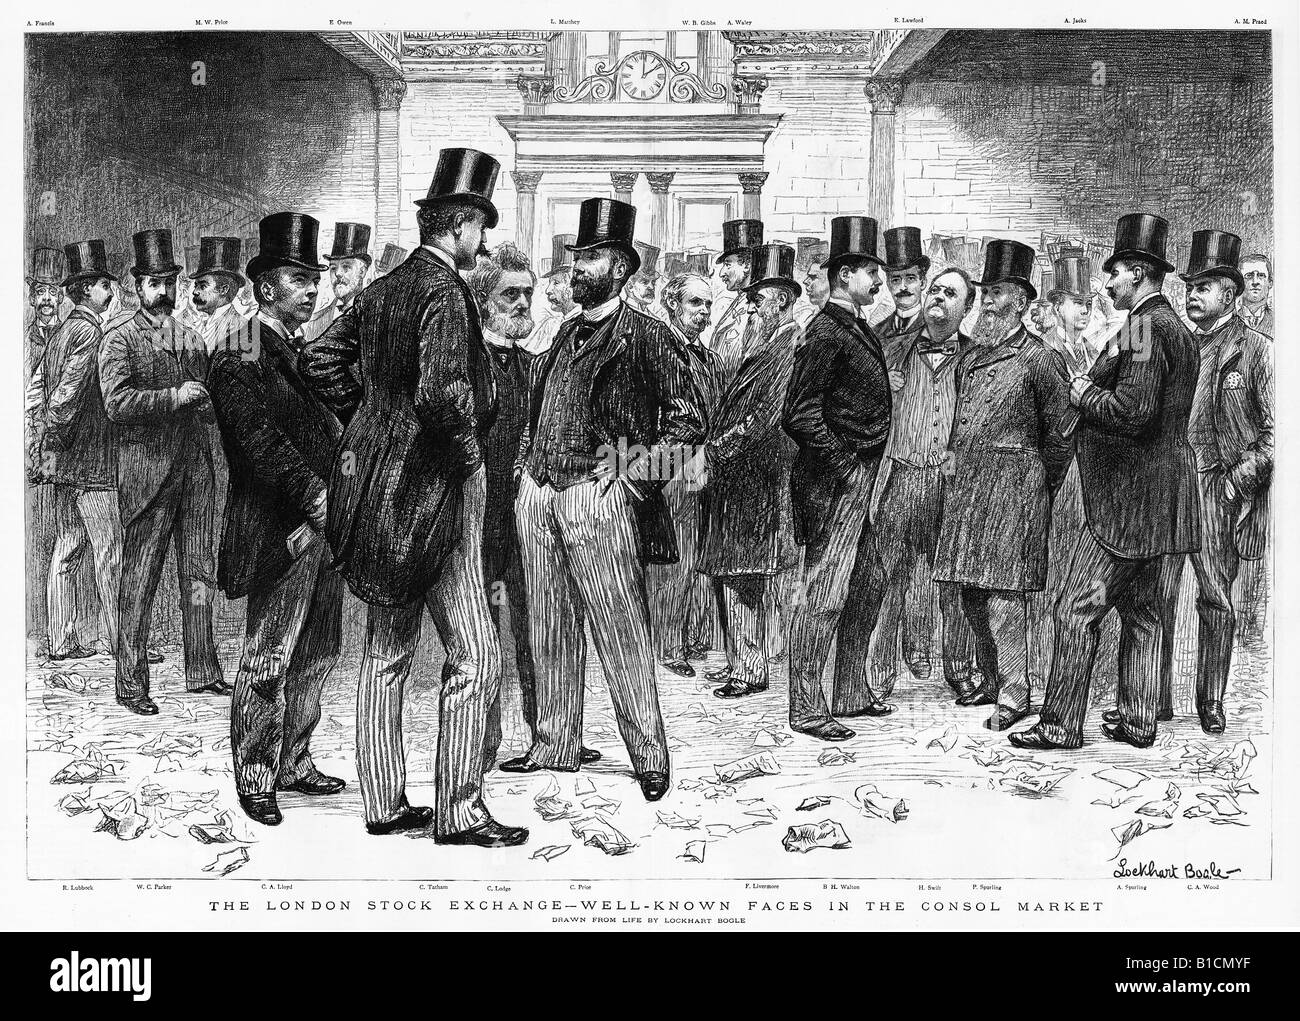 London Stock Exchange 1891 zu drucken, der bekannte Gesichter in der London Consol-Markt Handel mit Staatsanleihen Stockfoto